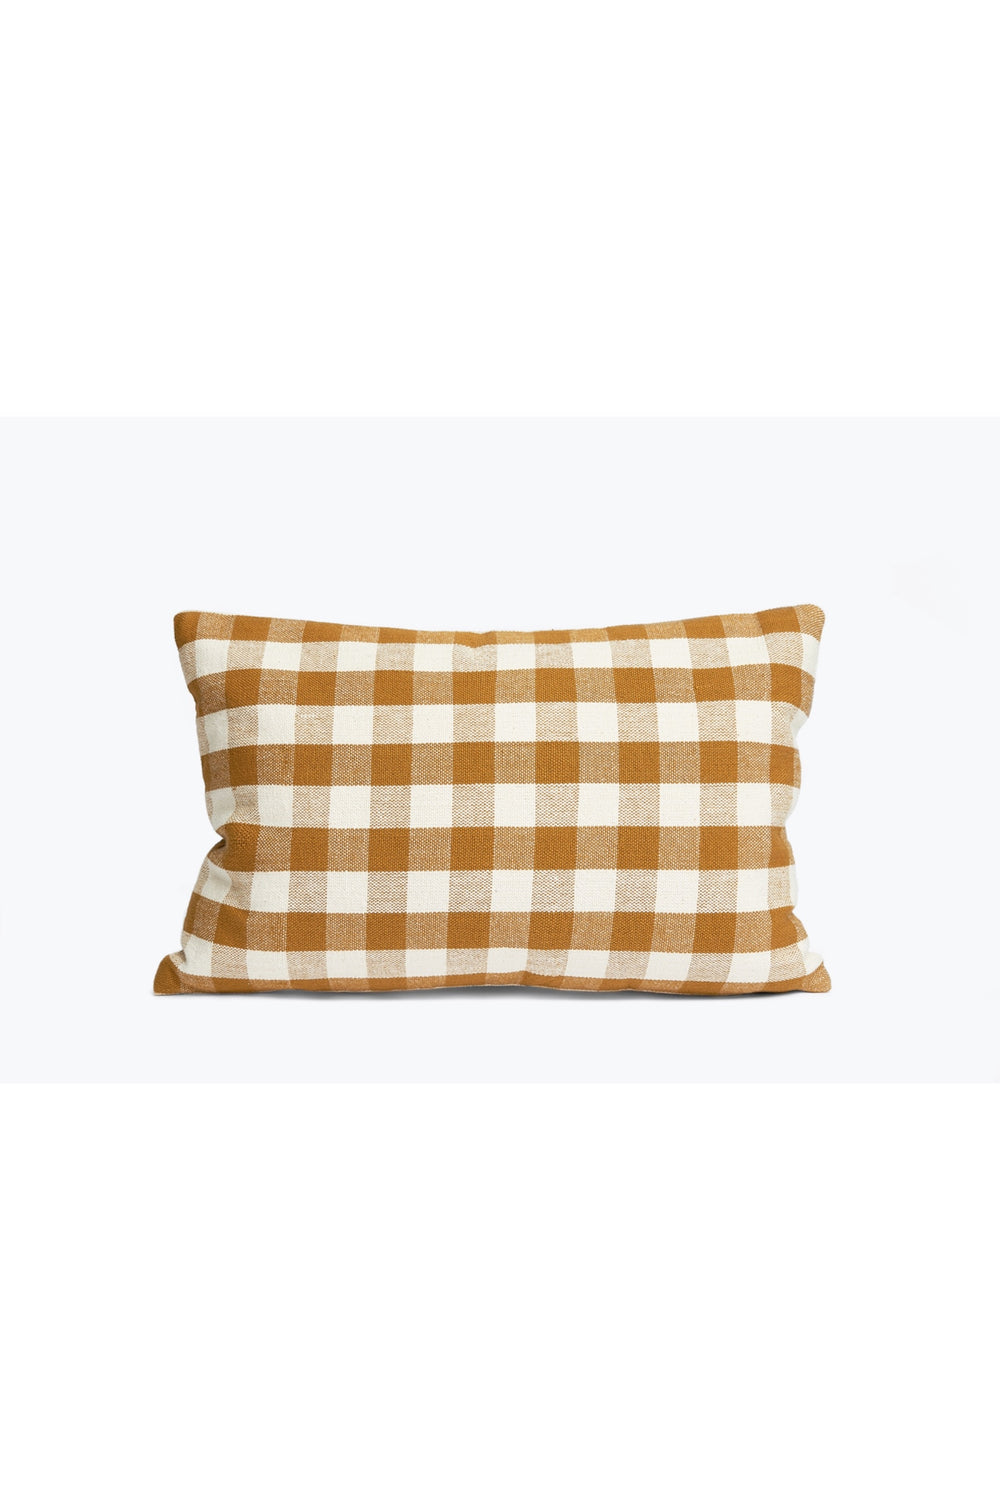 Honey Gingham Lumbar Pillow